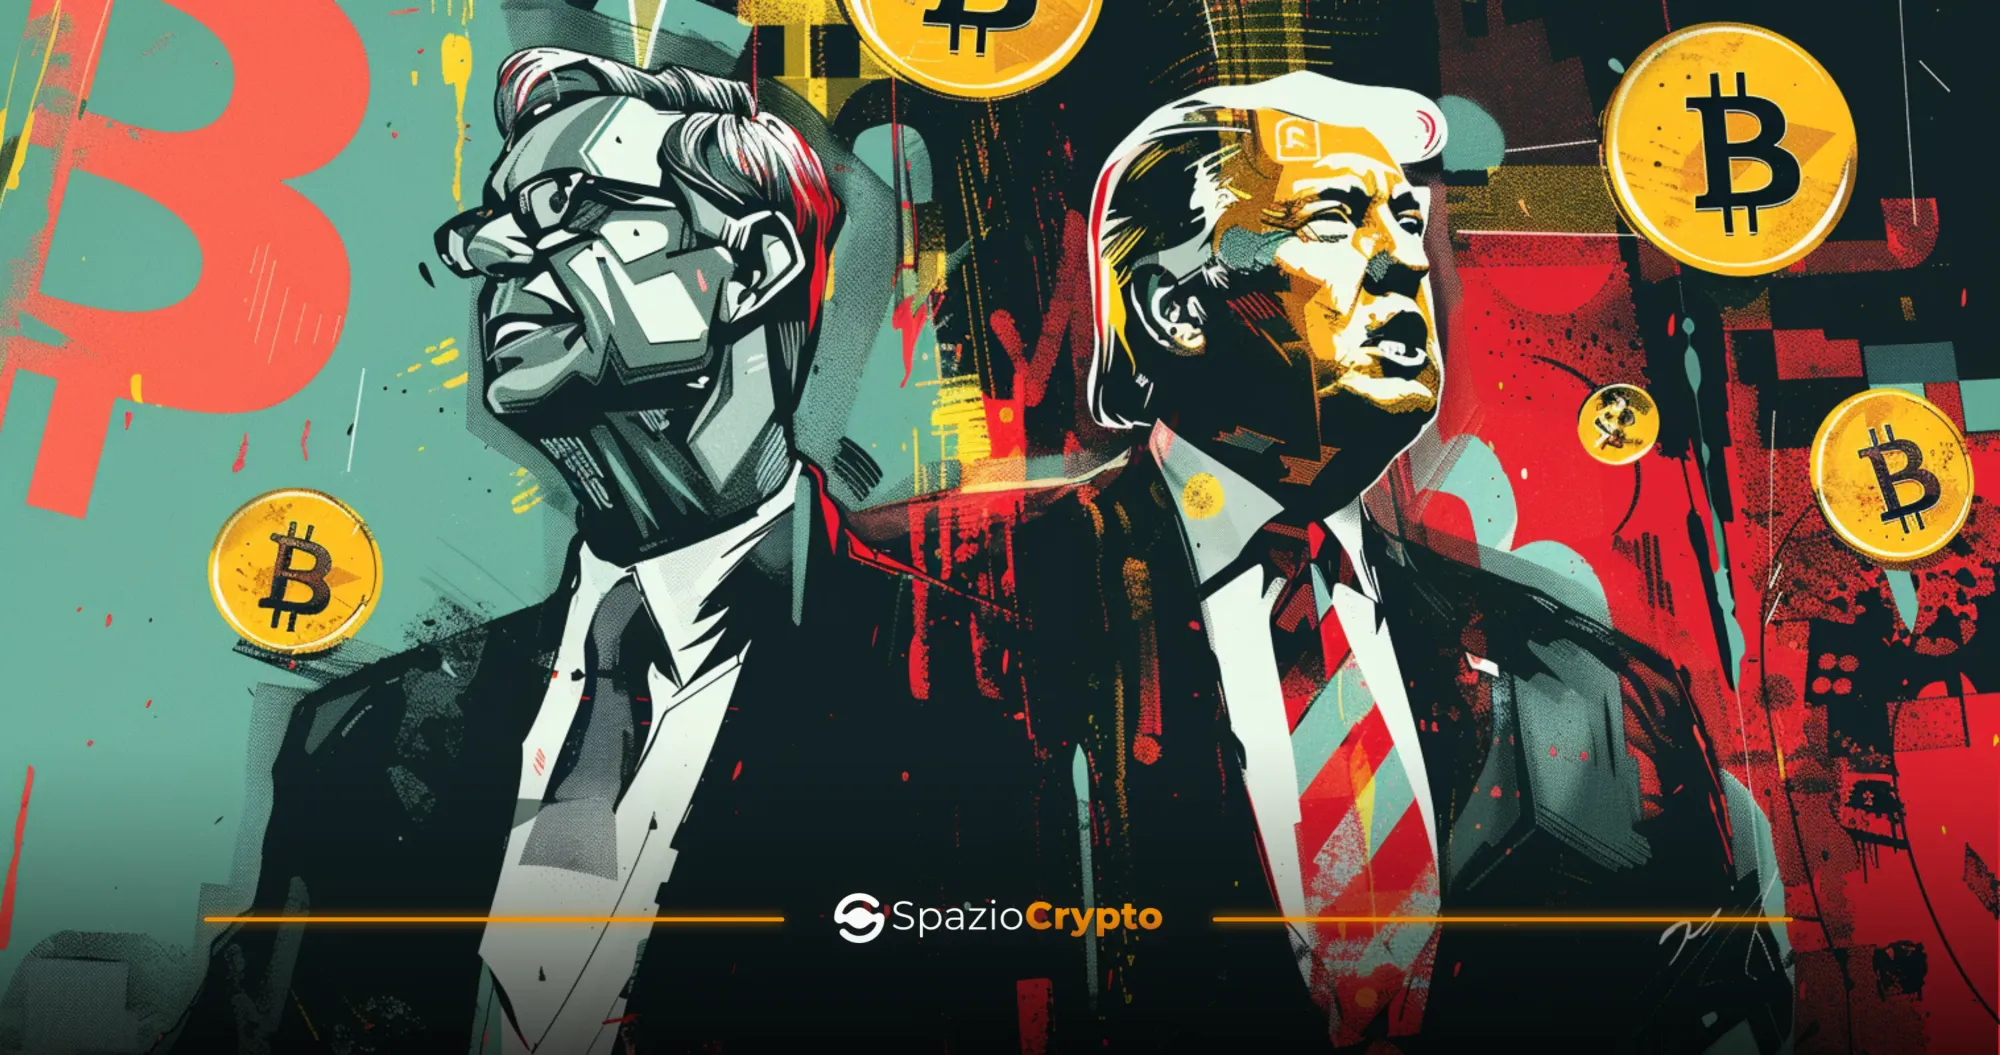 Donald Trump et les crypto-monnaies : le bitcoin comme champ de bataille électoral - Spaziocrypto